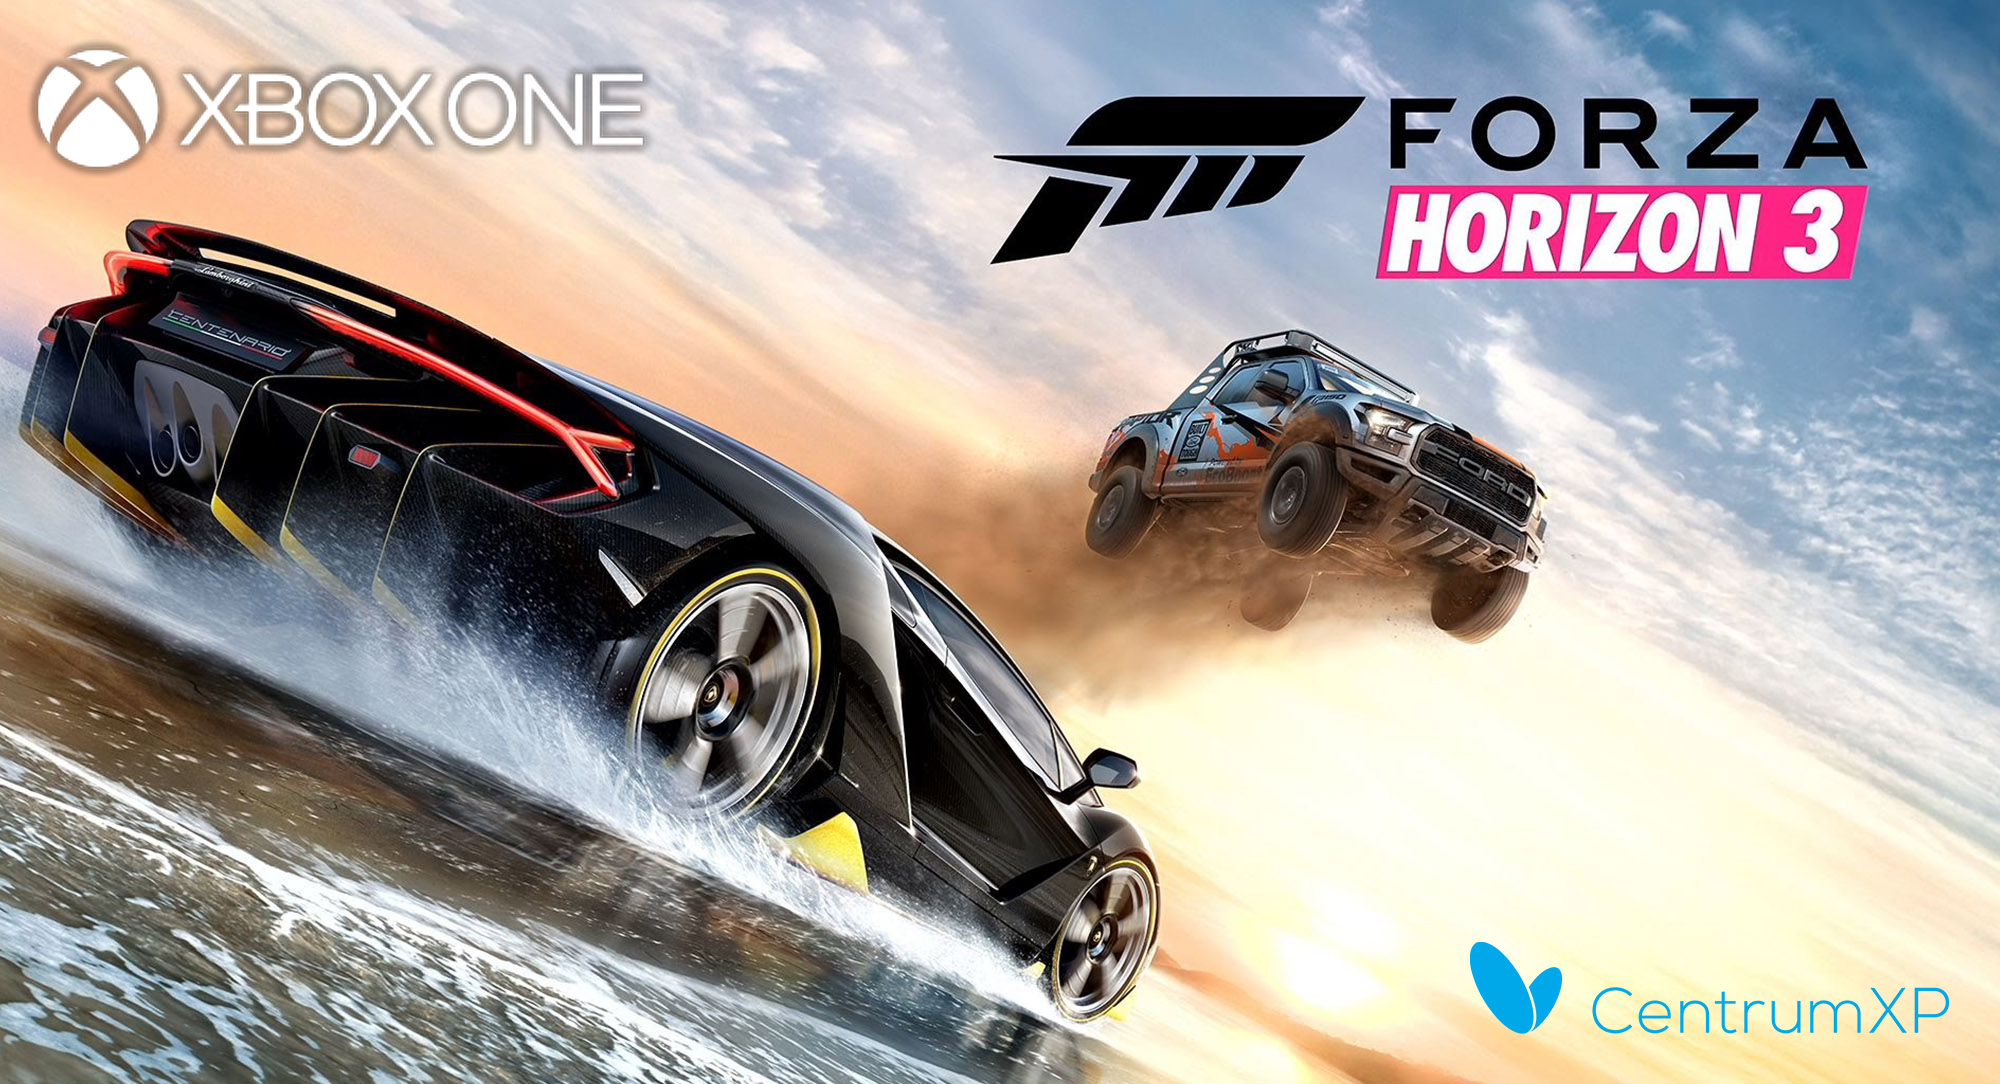 Xbox Ona Forza Horizon 3